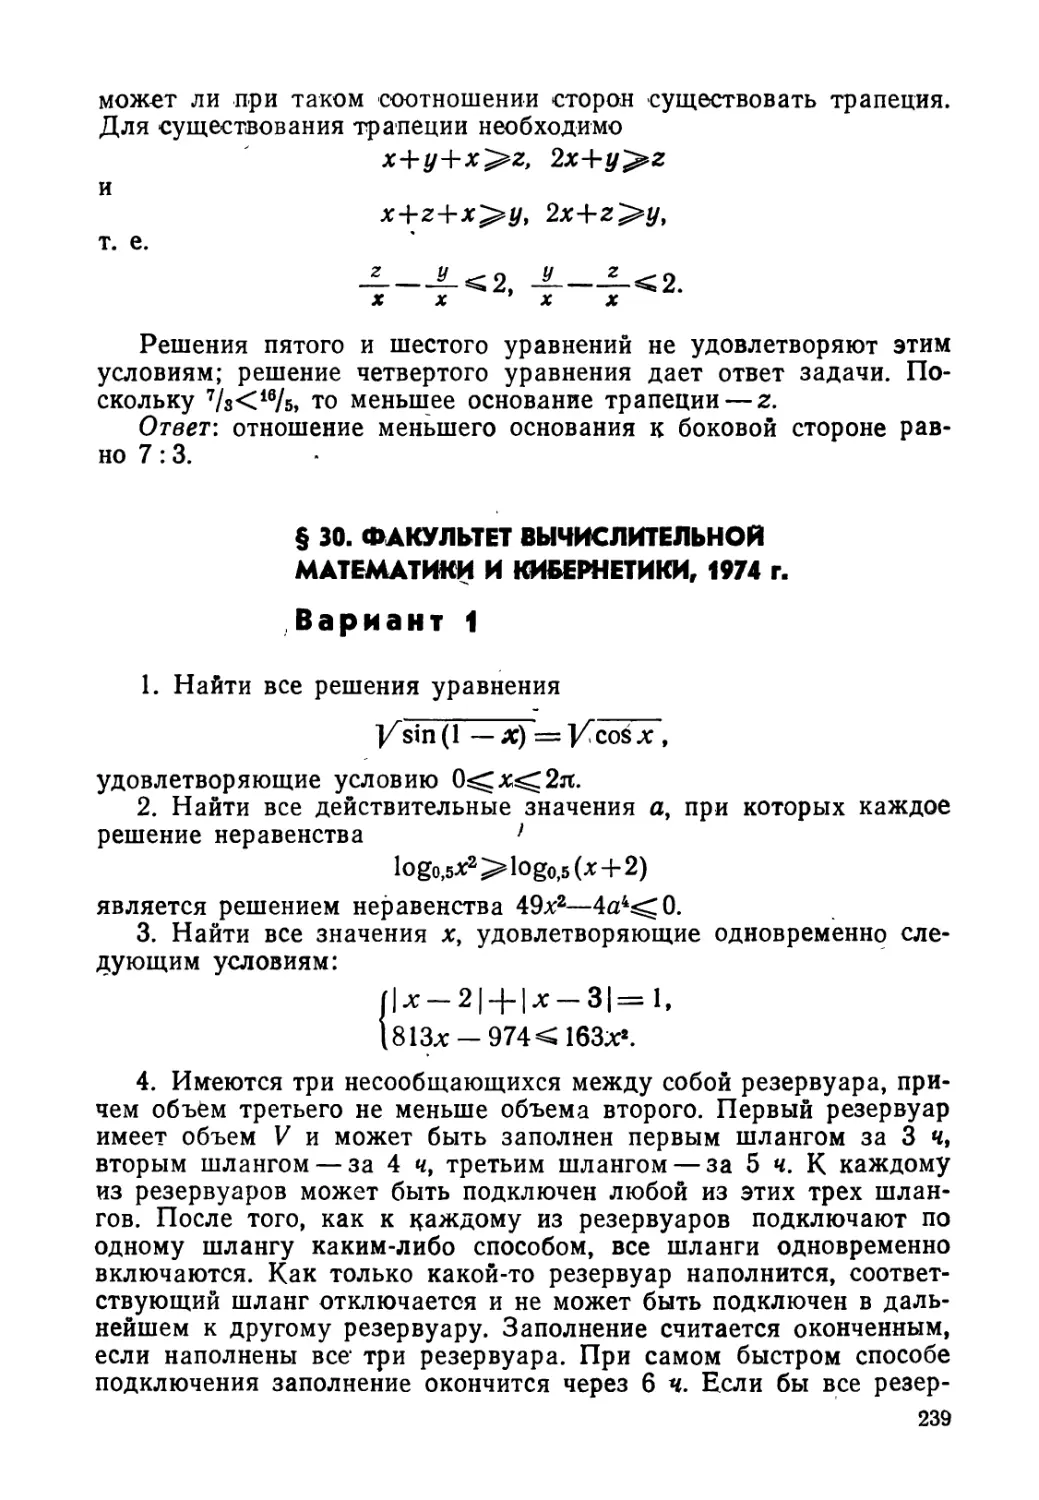 § 30. Факультет вычислительной математики и кибернетики, 1974 г